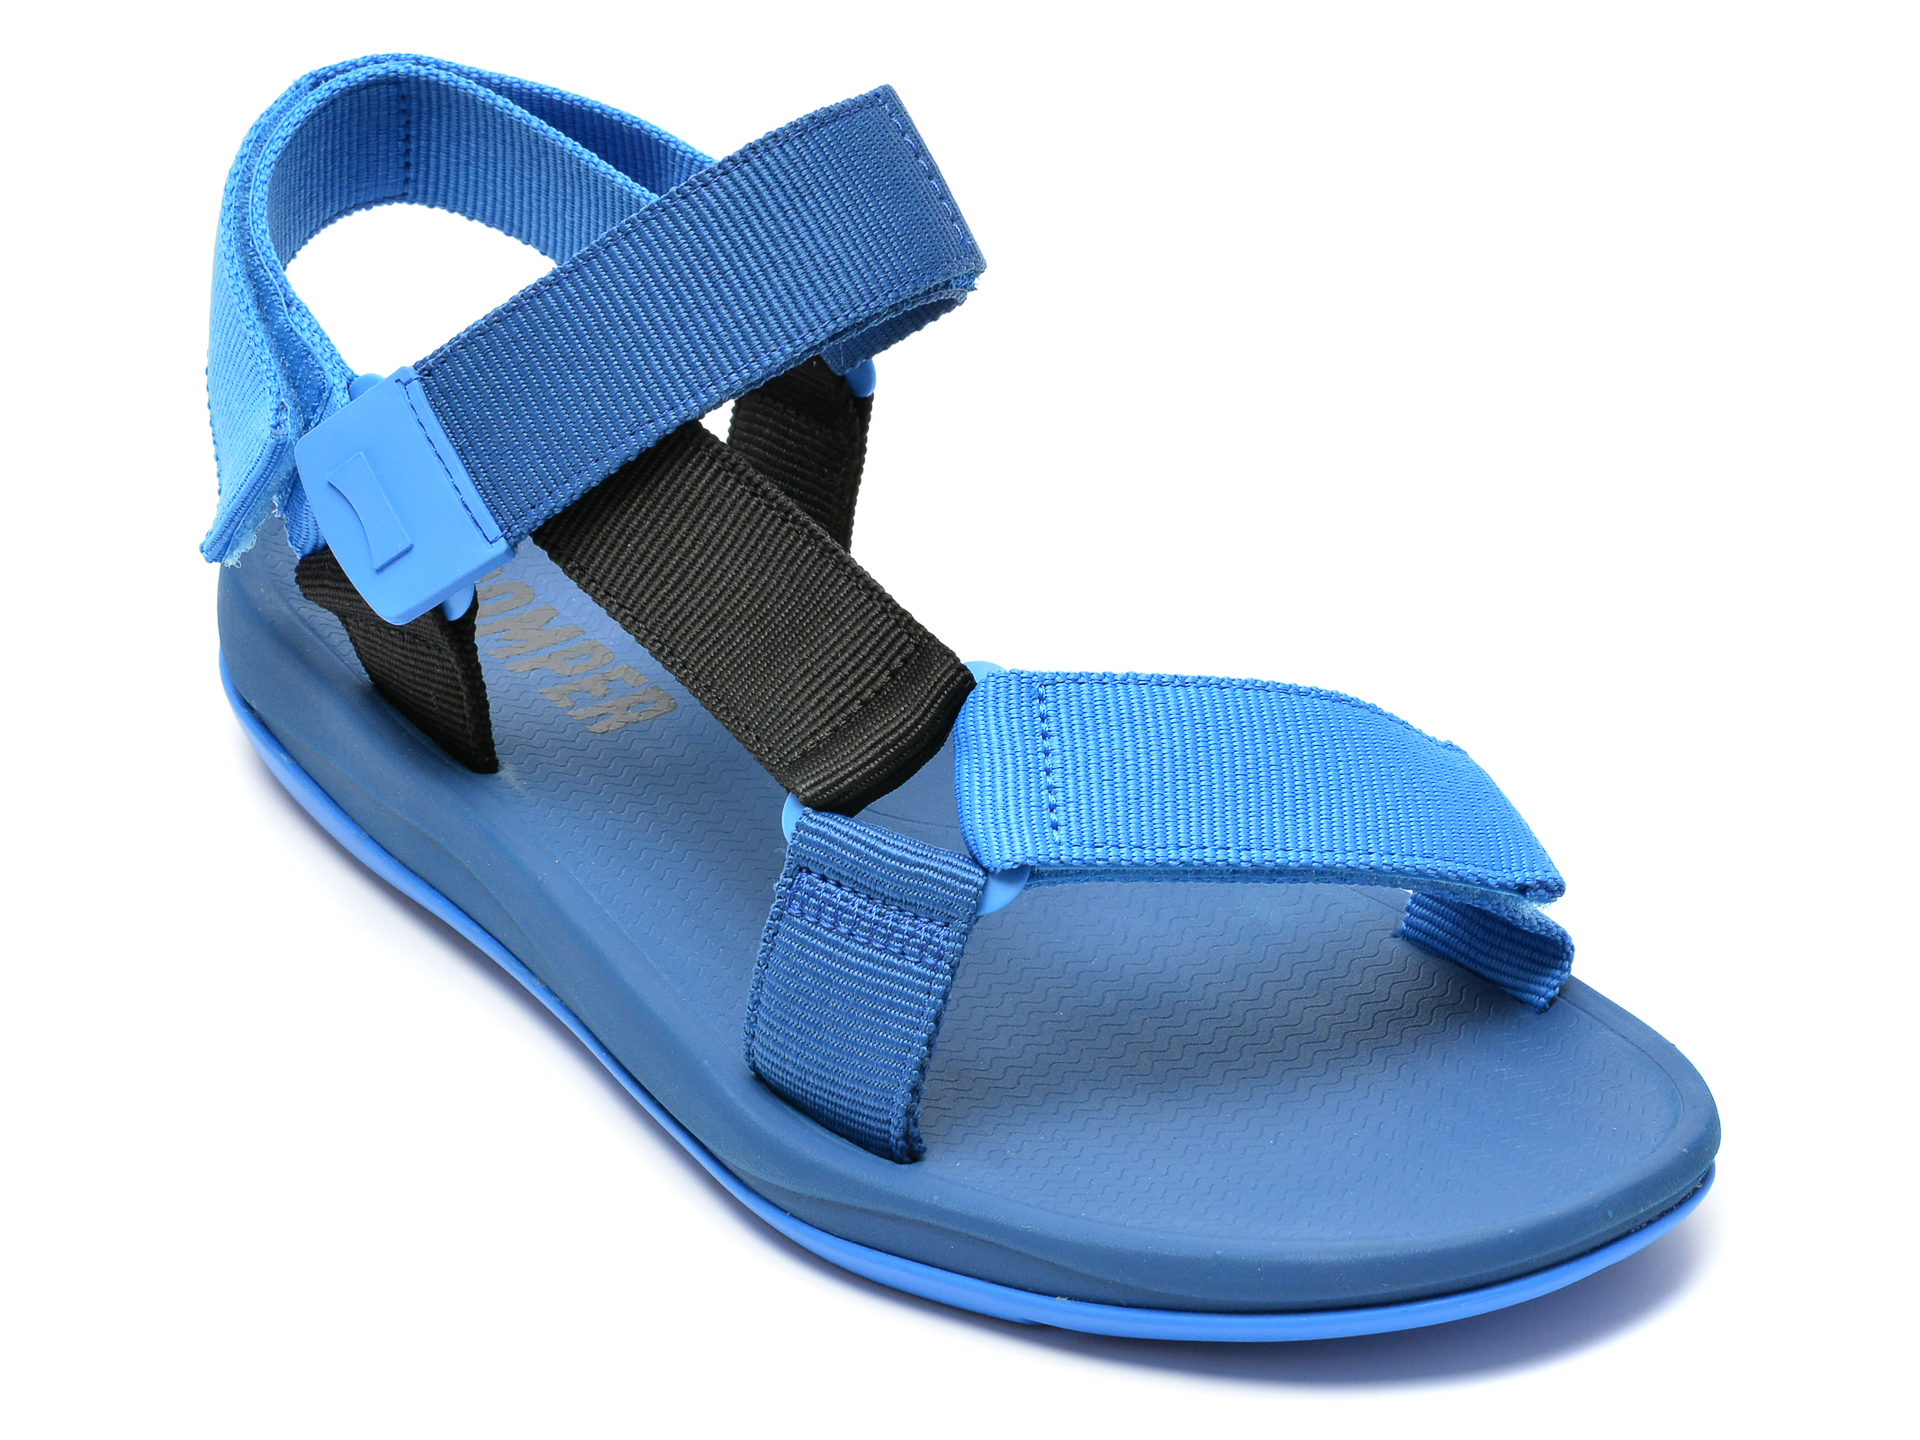 Sandale CAMPER albastre, K100539, din material textil /barbati/sandale